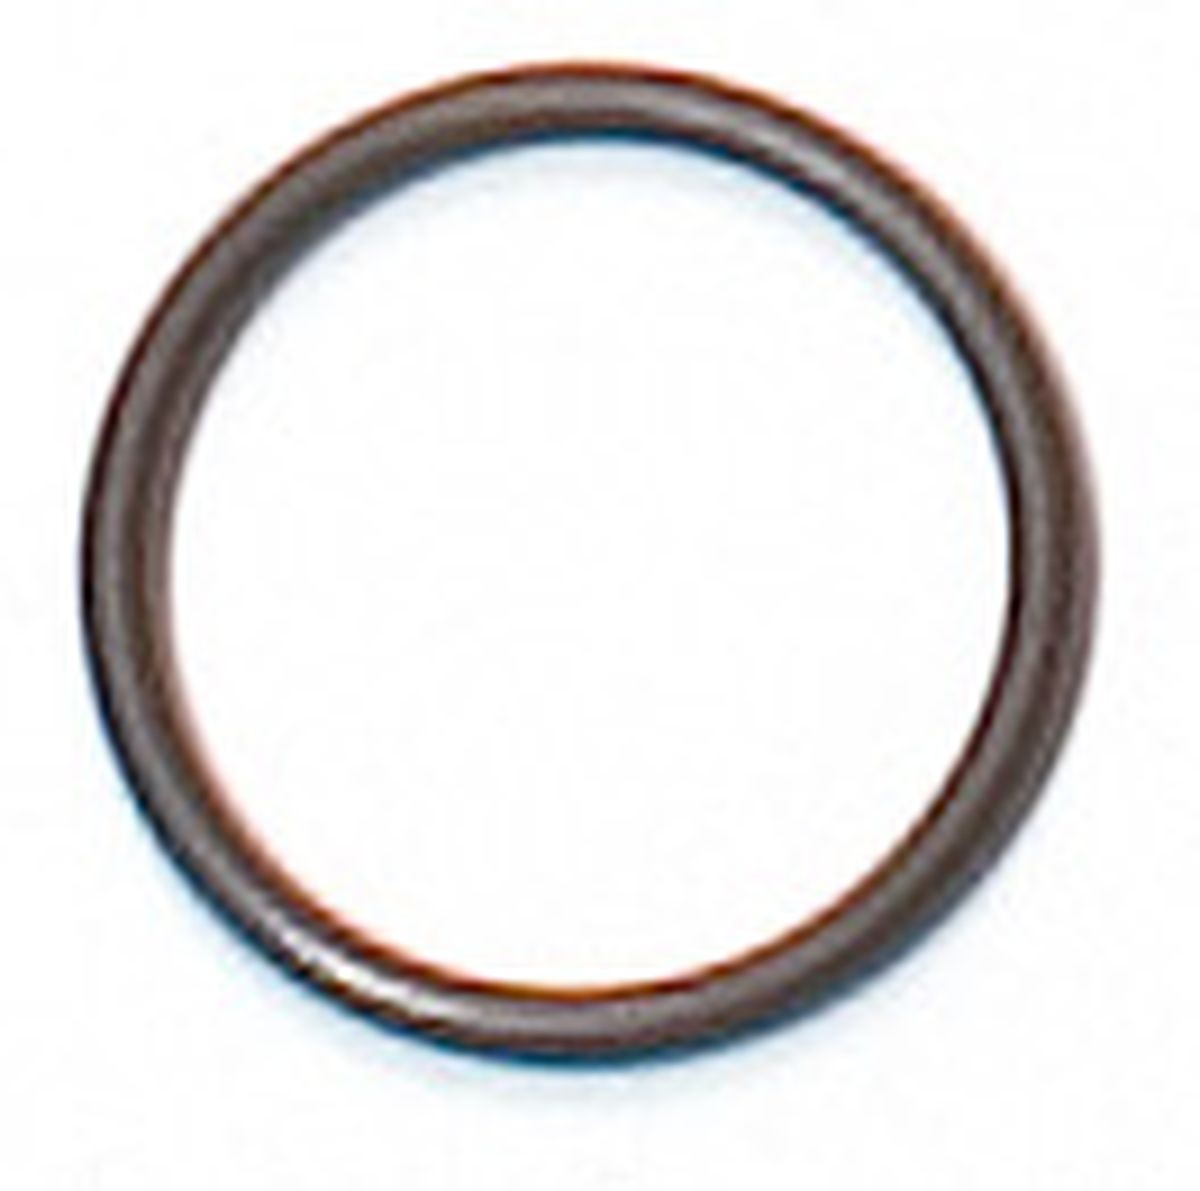 Rubber sealing ring